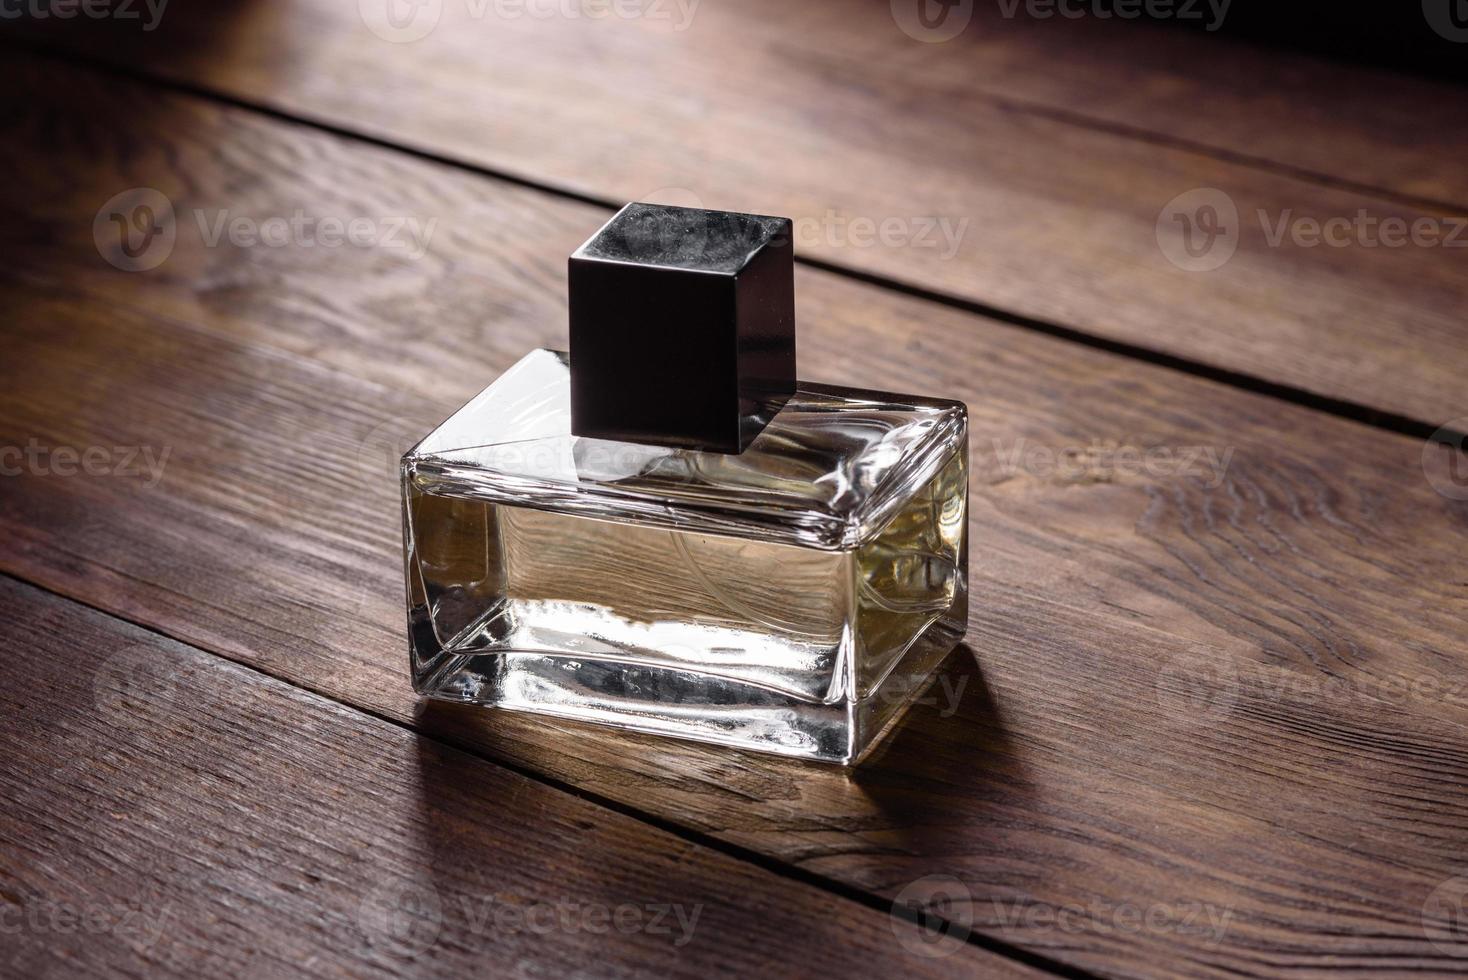 frasco de perfume de vidro com raminho de alecrim no pódio de madeira foto